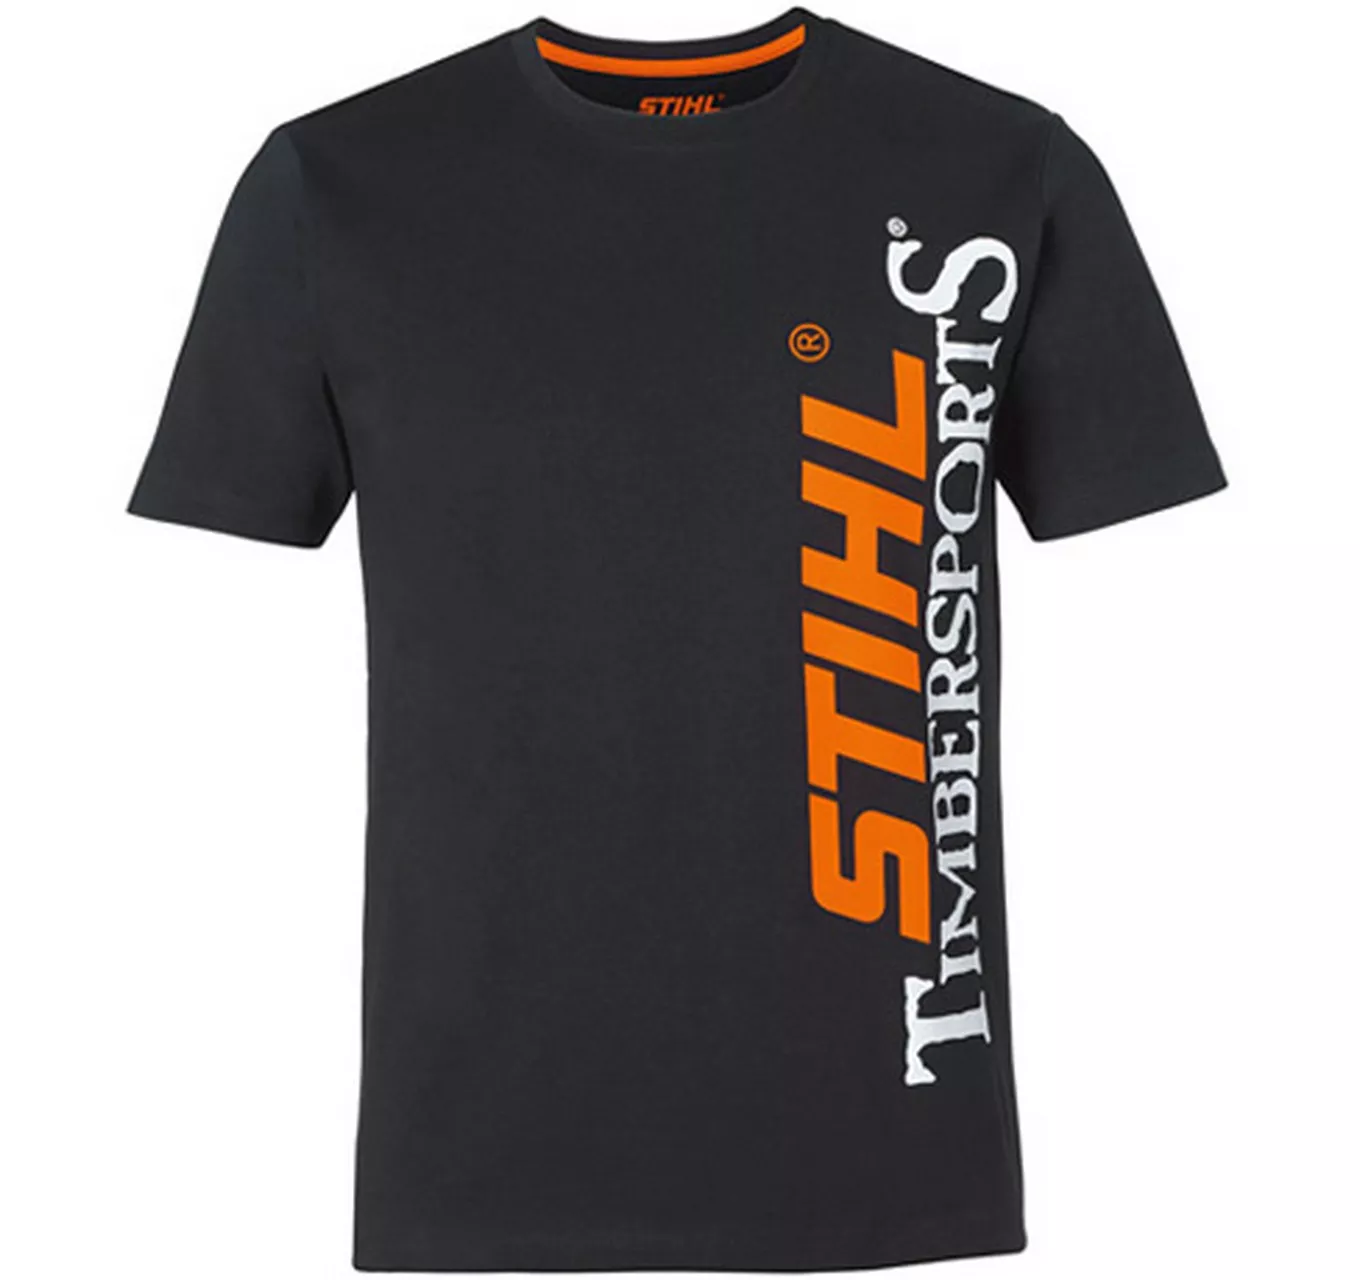 STIHL Timbersports T-Shirt M